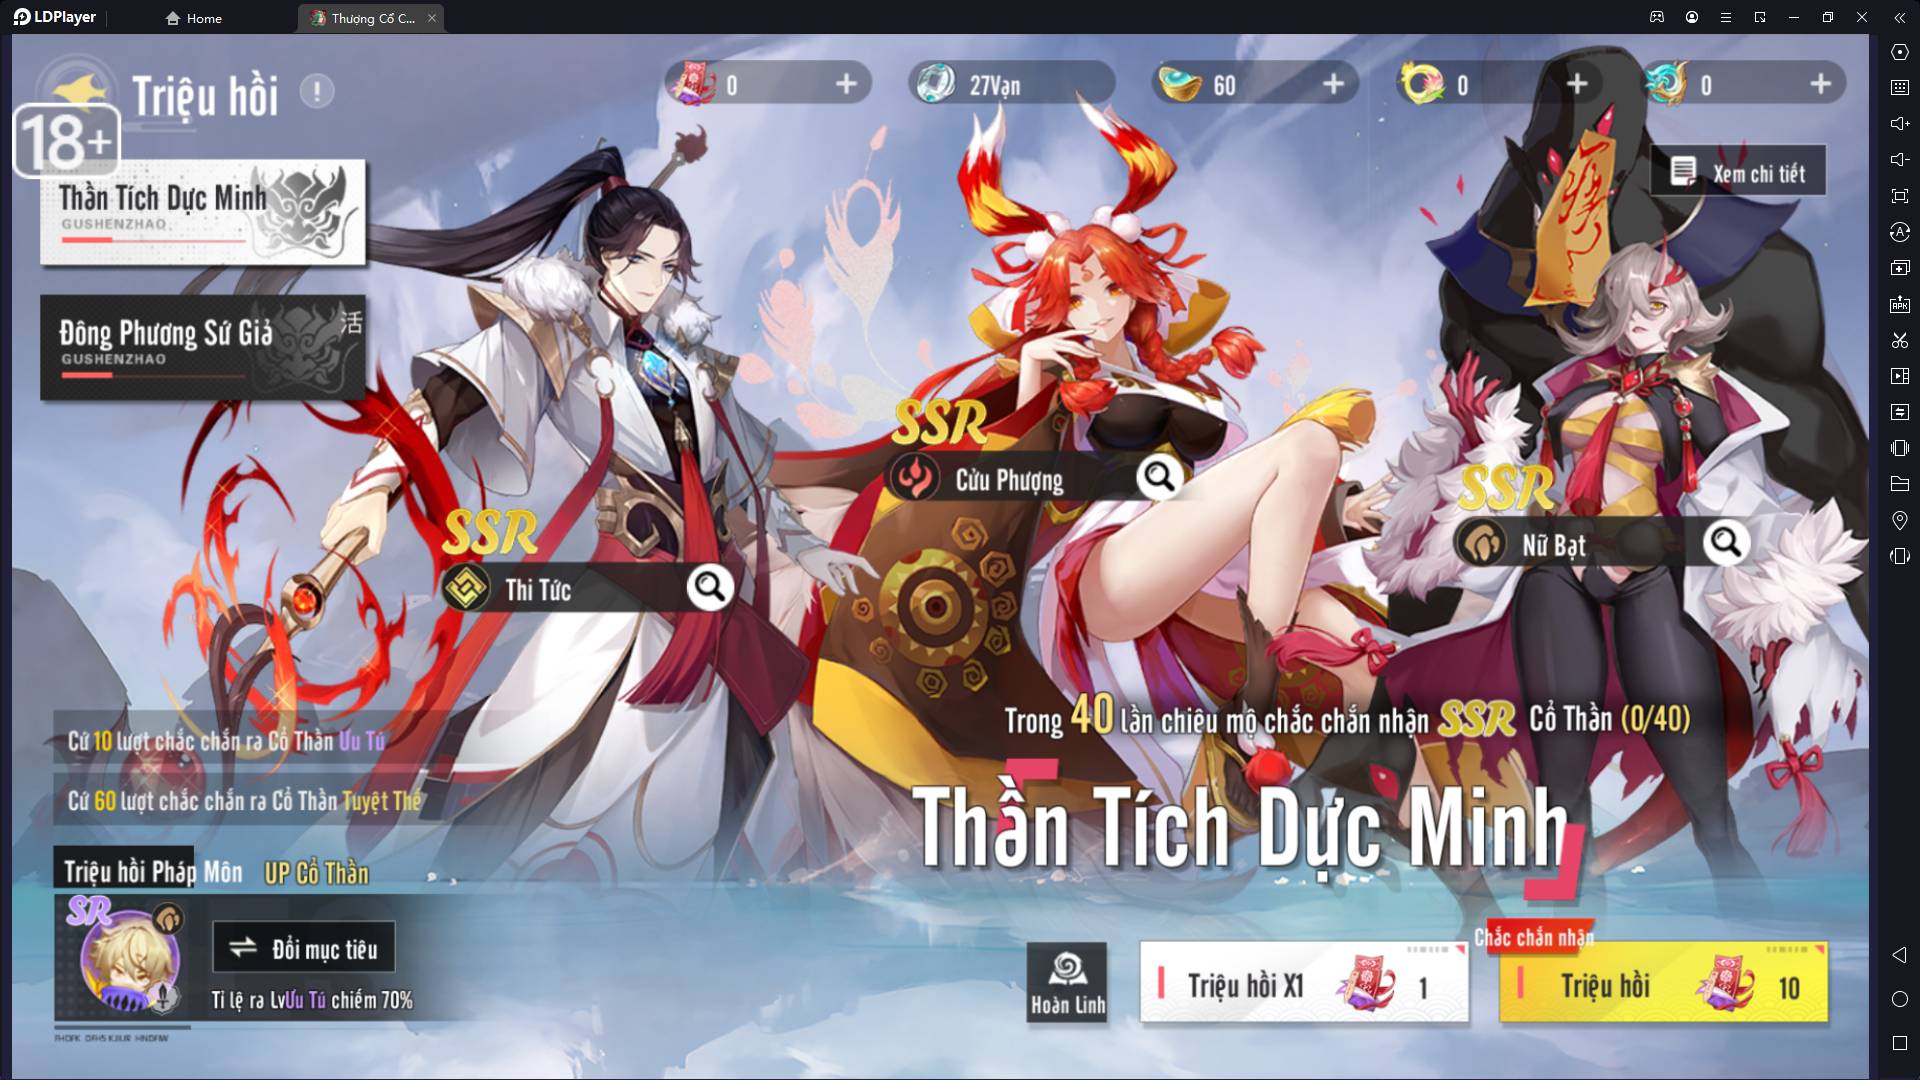 『GAME Thành』 Thượng Cổ Chi Vương - Game Mobile MMORPG thần thoại đặc sắc ra mắt